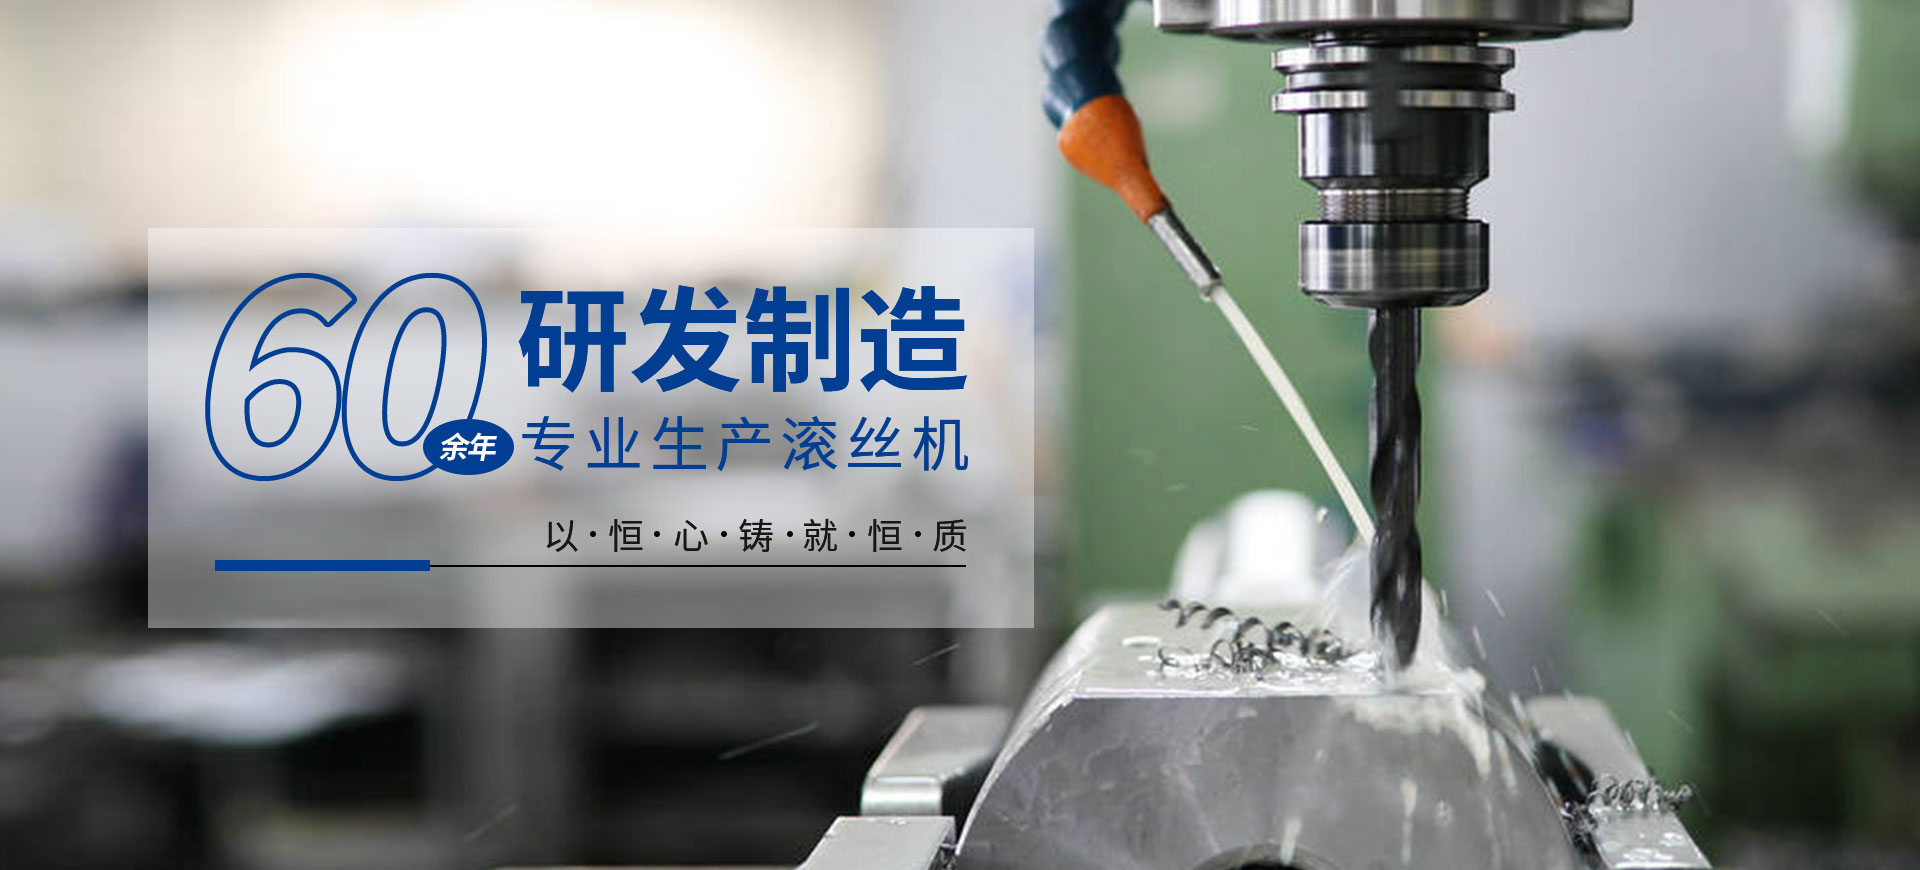 关于当前产品4066全球之信心之选·(中国)官方网站的成功案例等相关图片